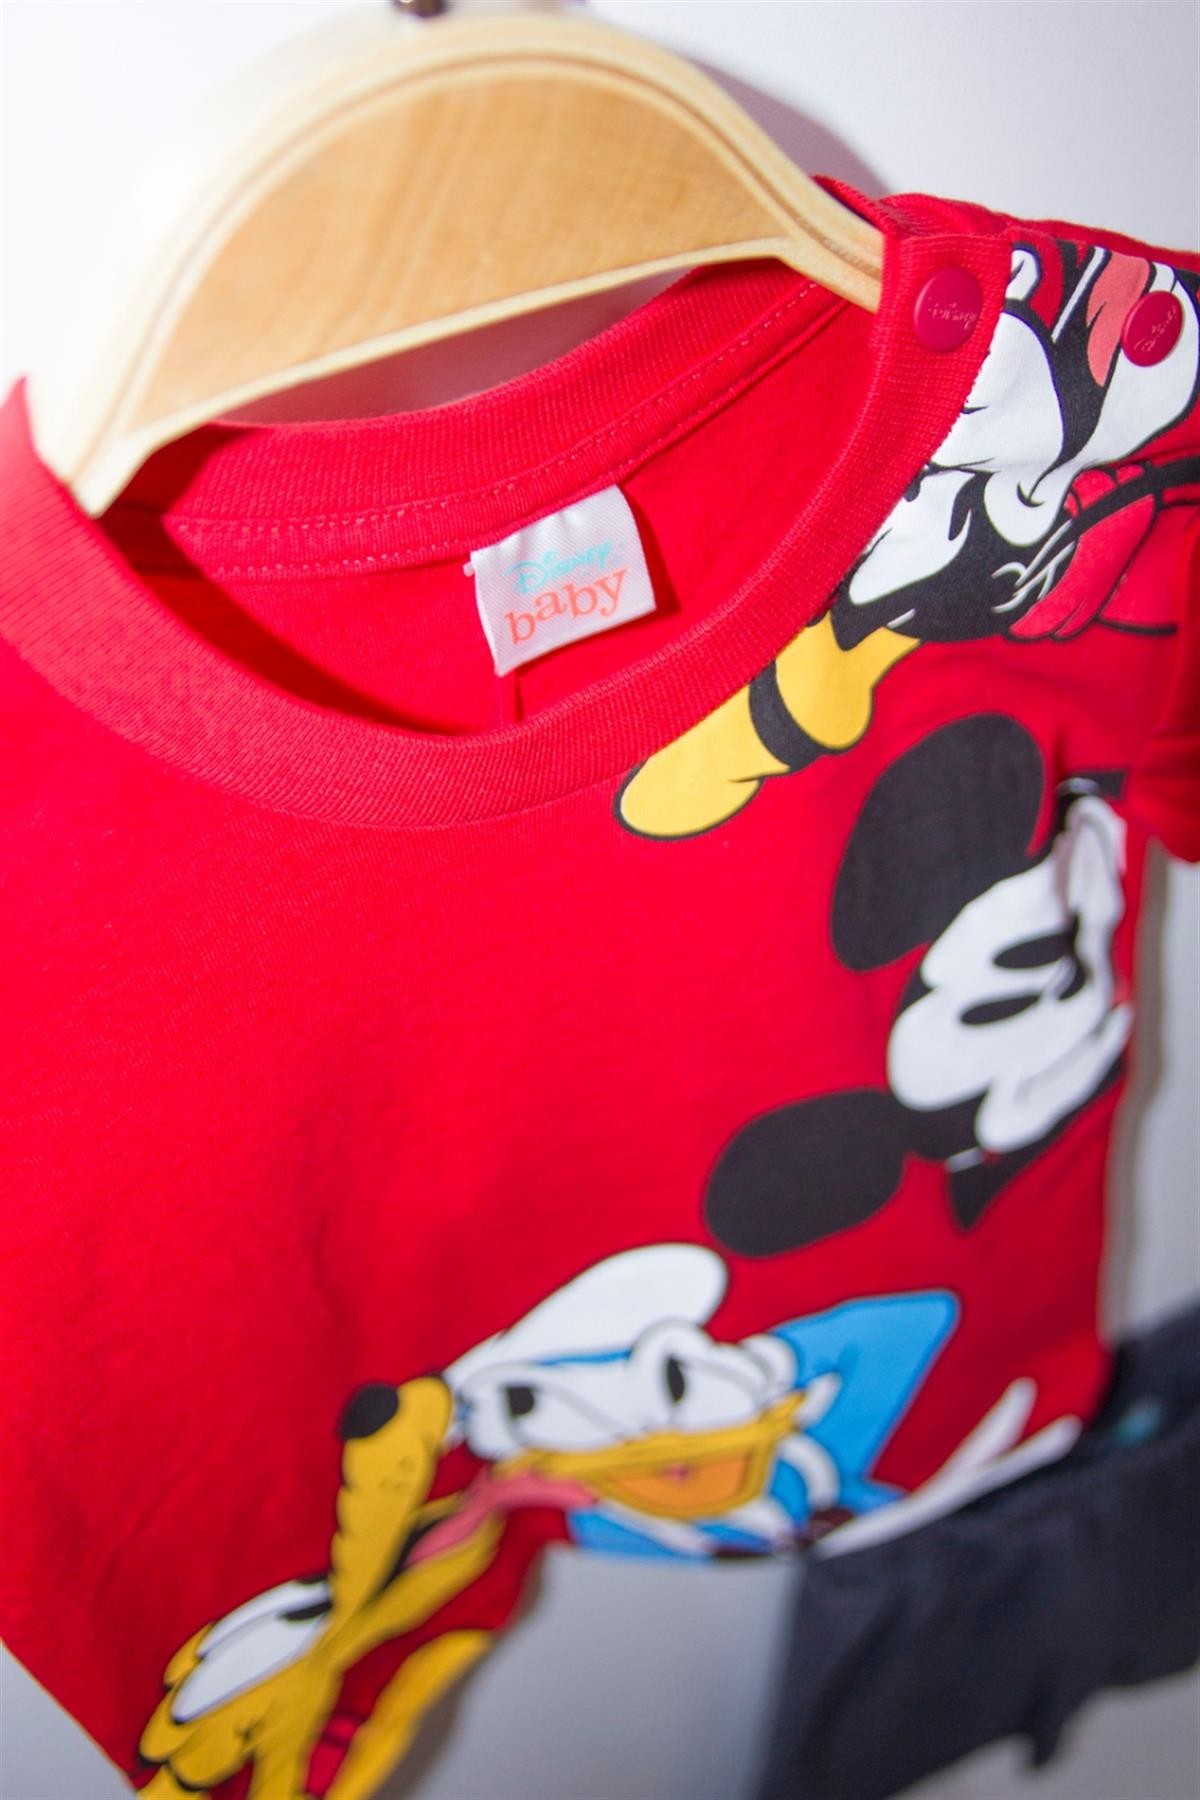 Disney Mickey Mouse Lisanslı Erkek Bebek Tişört ve Şort 2'li Takım 20889